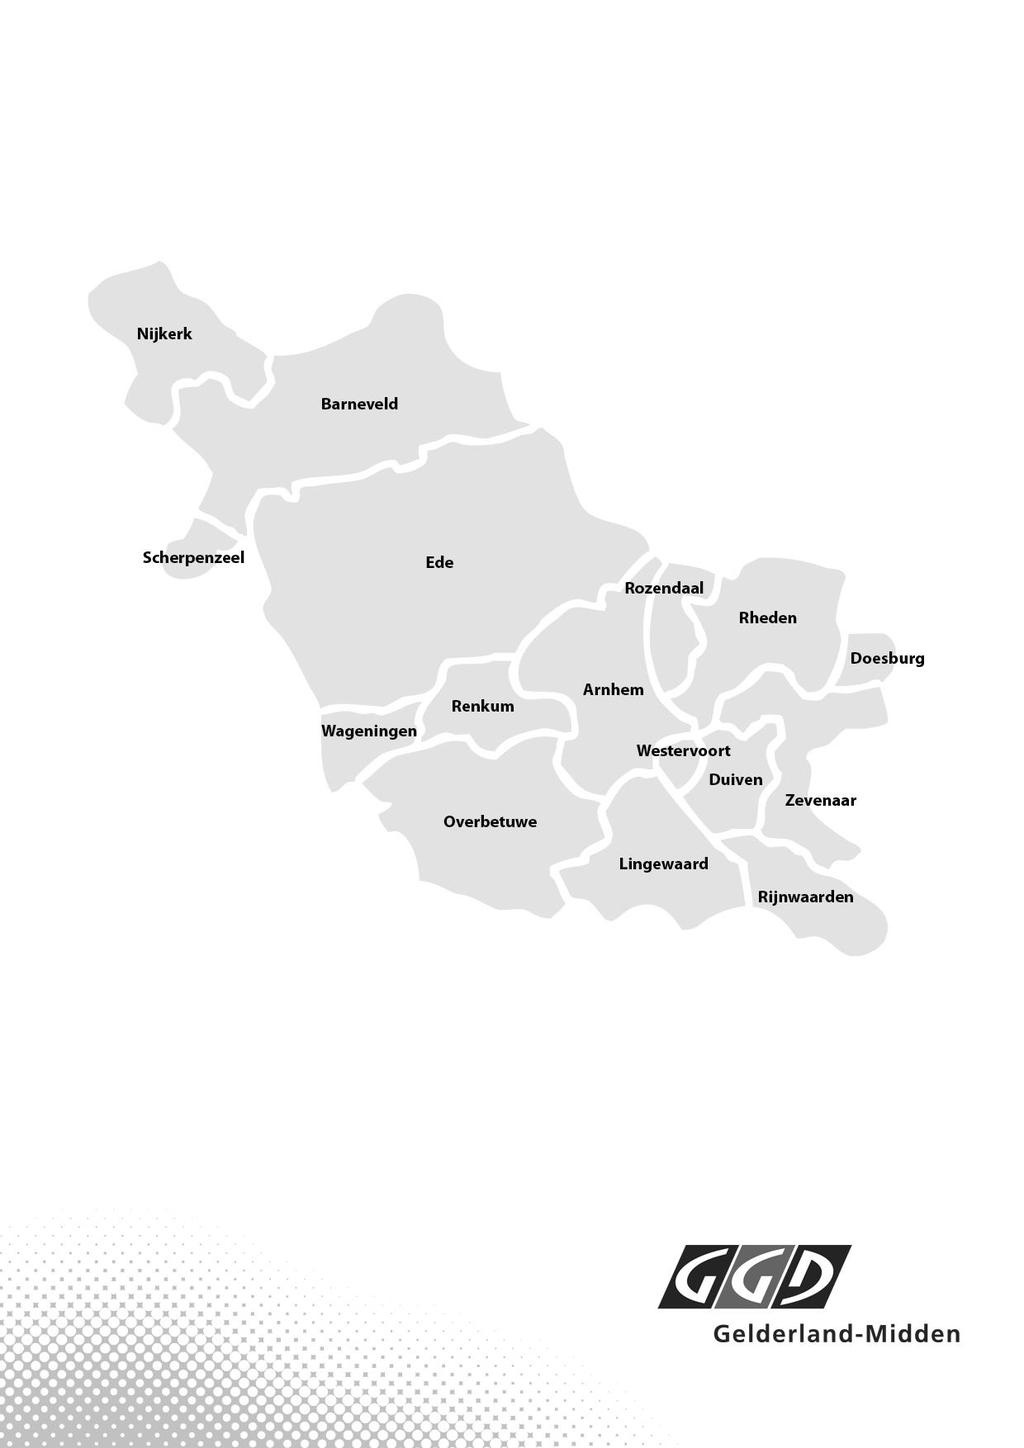 GGD Gelderland-Midden is onderdeel van de Veiligheids- en Gezondheidsregio Gelderland-Midden GGD